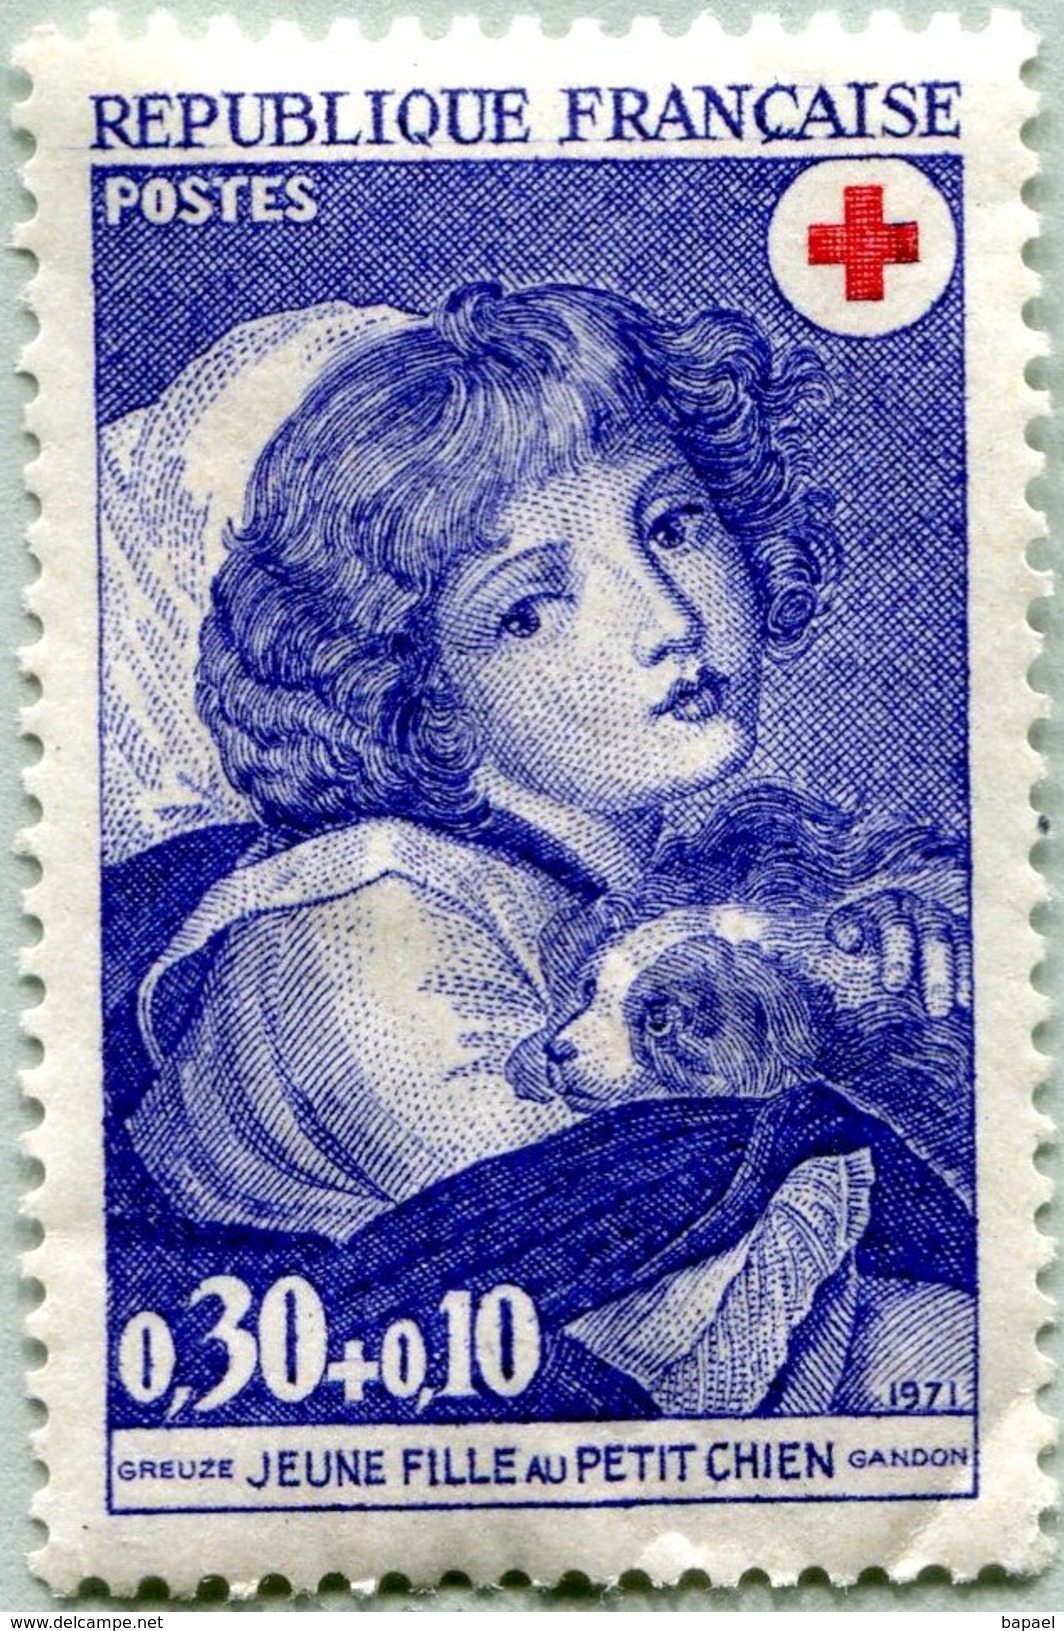 N° Yvert & Tellier 1700 - Timbre France (1971) - Croix-Rouge - (Neuf Sans Gomme) - Jeune Fille Au Petit Chien (Greuze) - Neufs